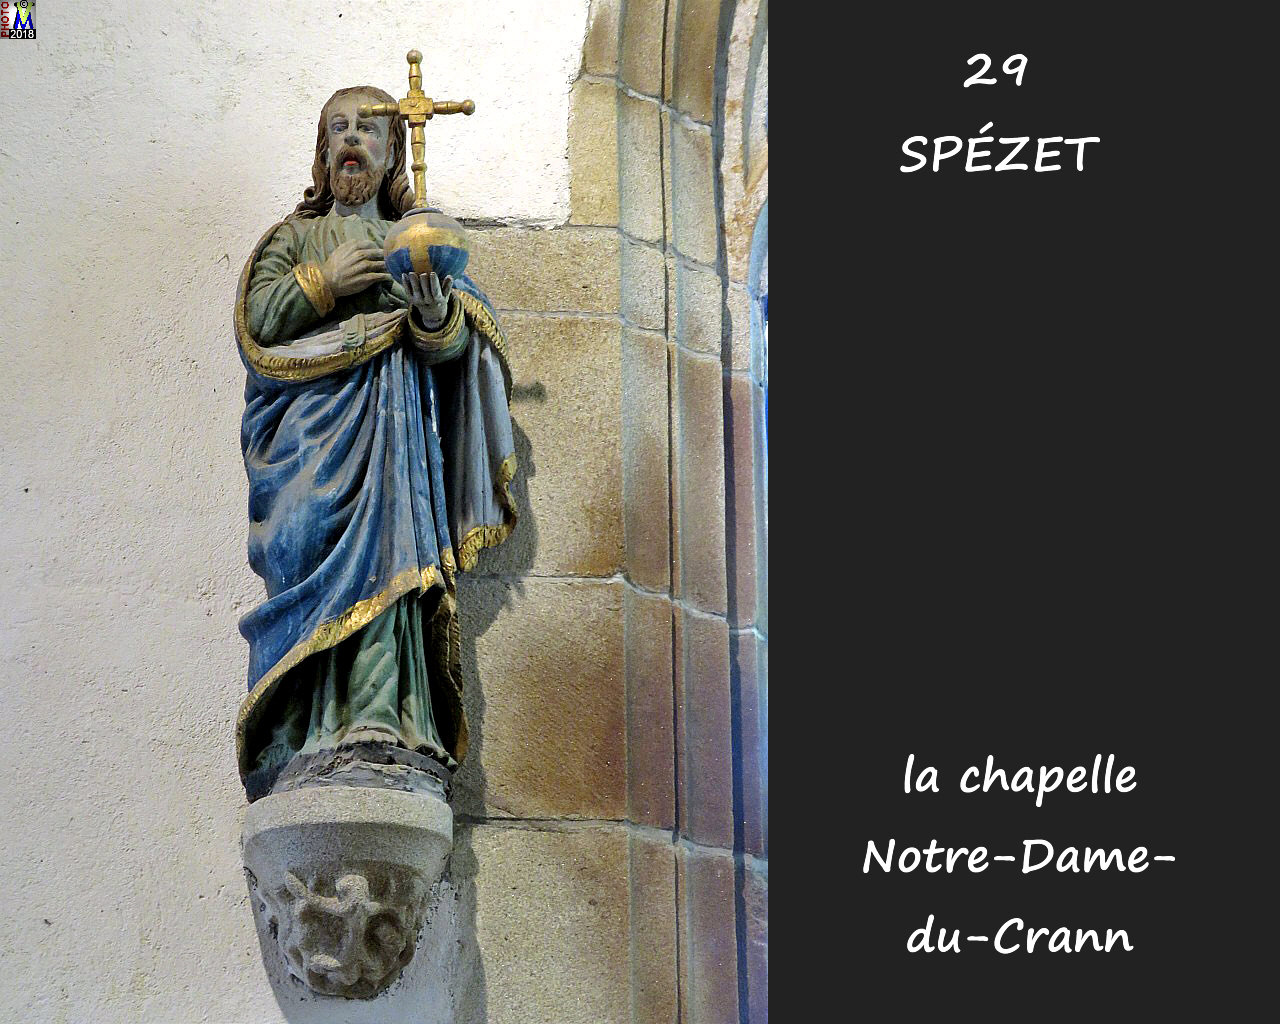 29SPEZET_chapelleNDC_266.jpg